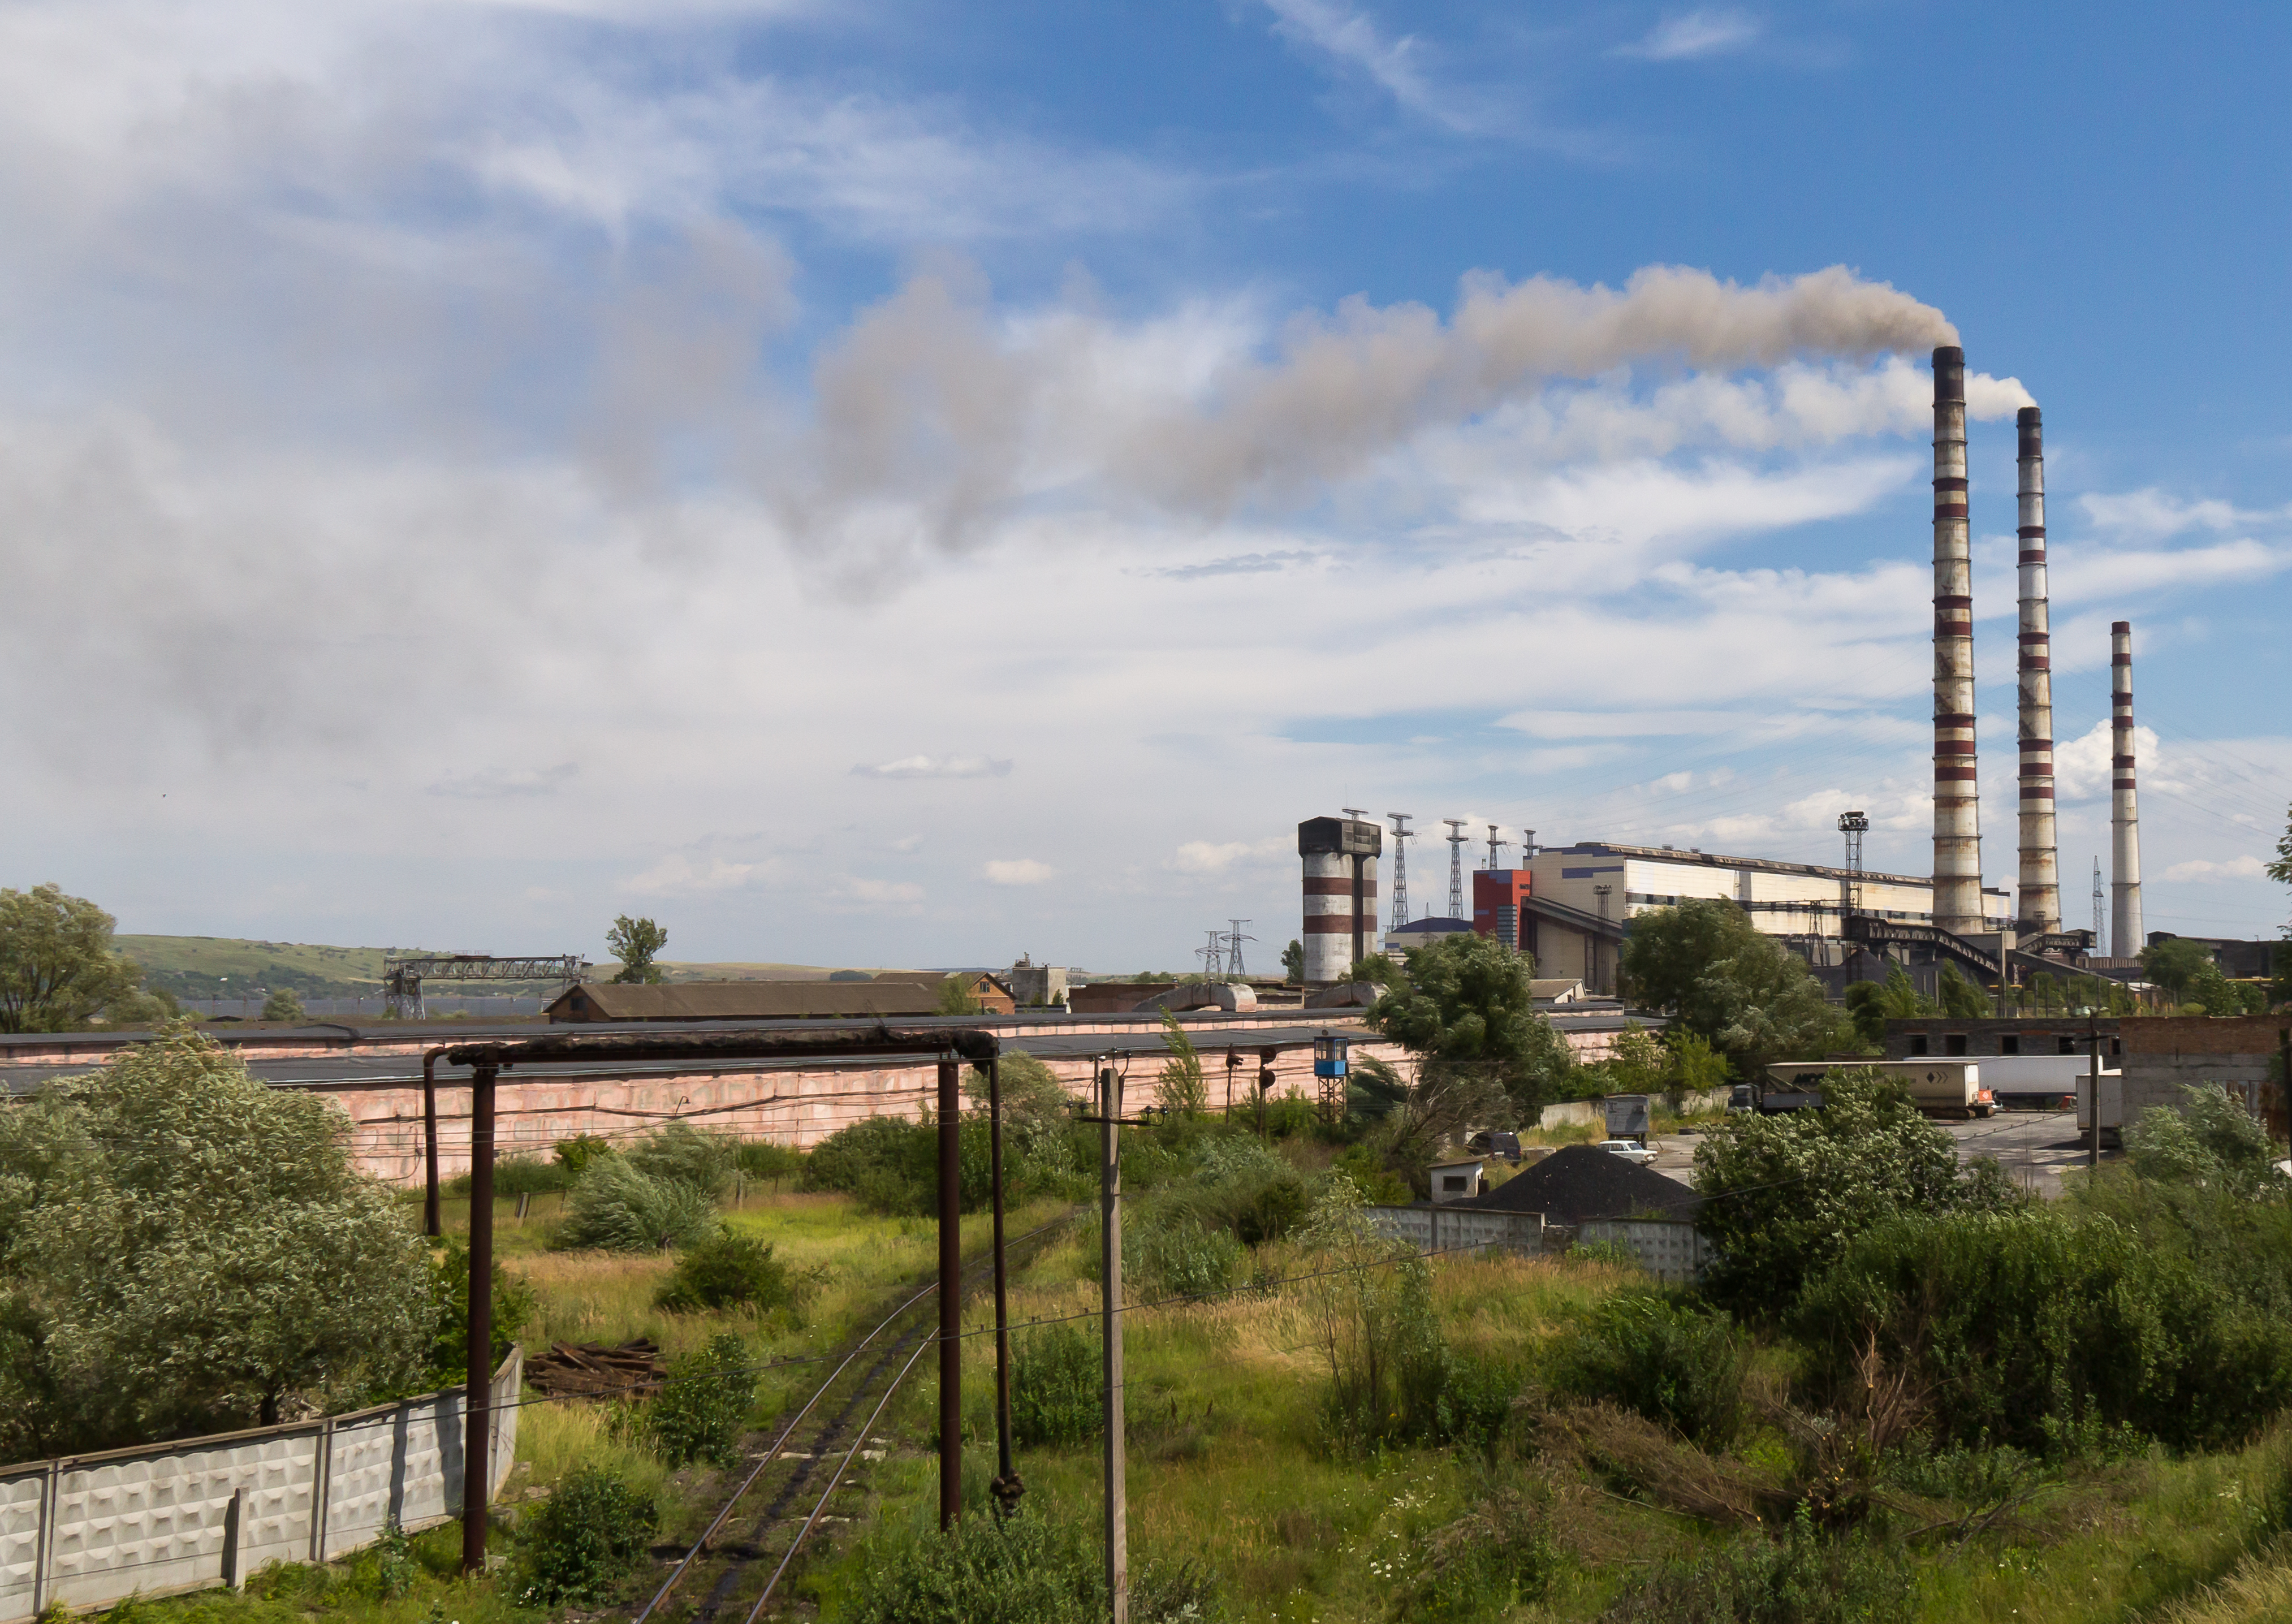 Magyarország szén-dioxid-kibocsátása azért alacsony, mert a szomszédból hozzuk az áramot